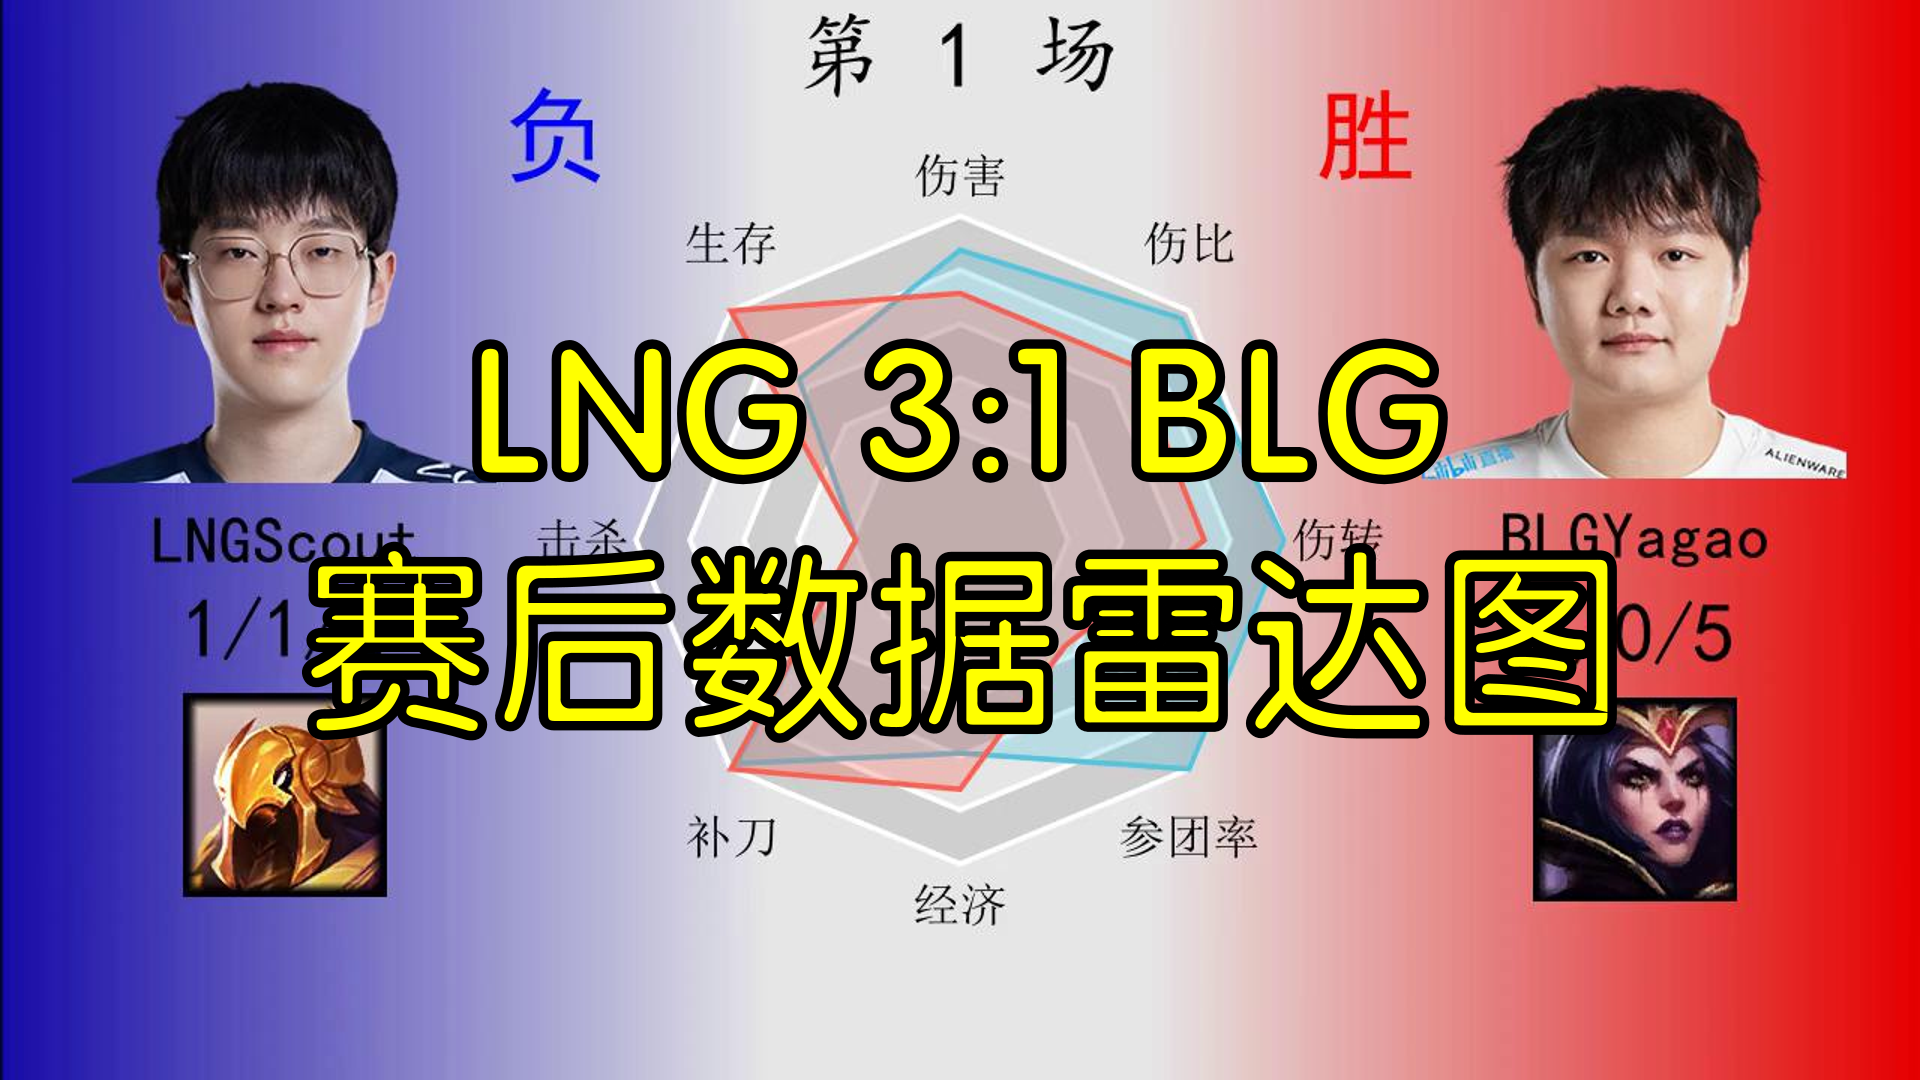 LNG 3:1 BLG赛后数据雷达图